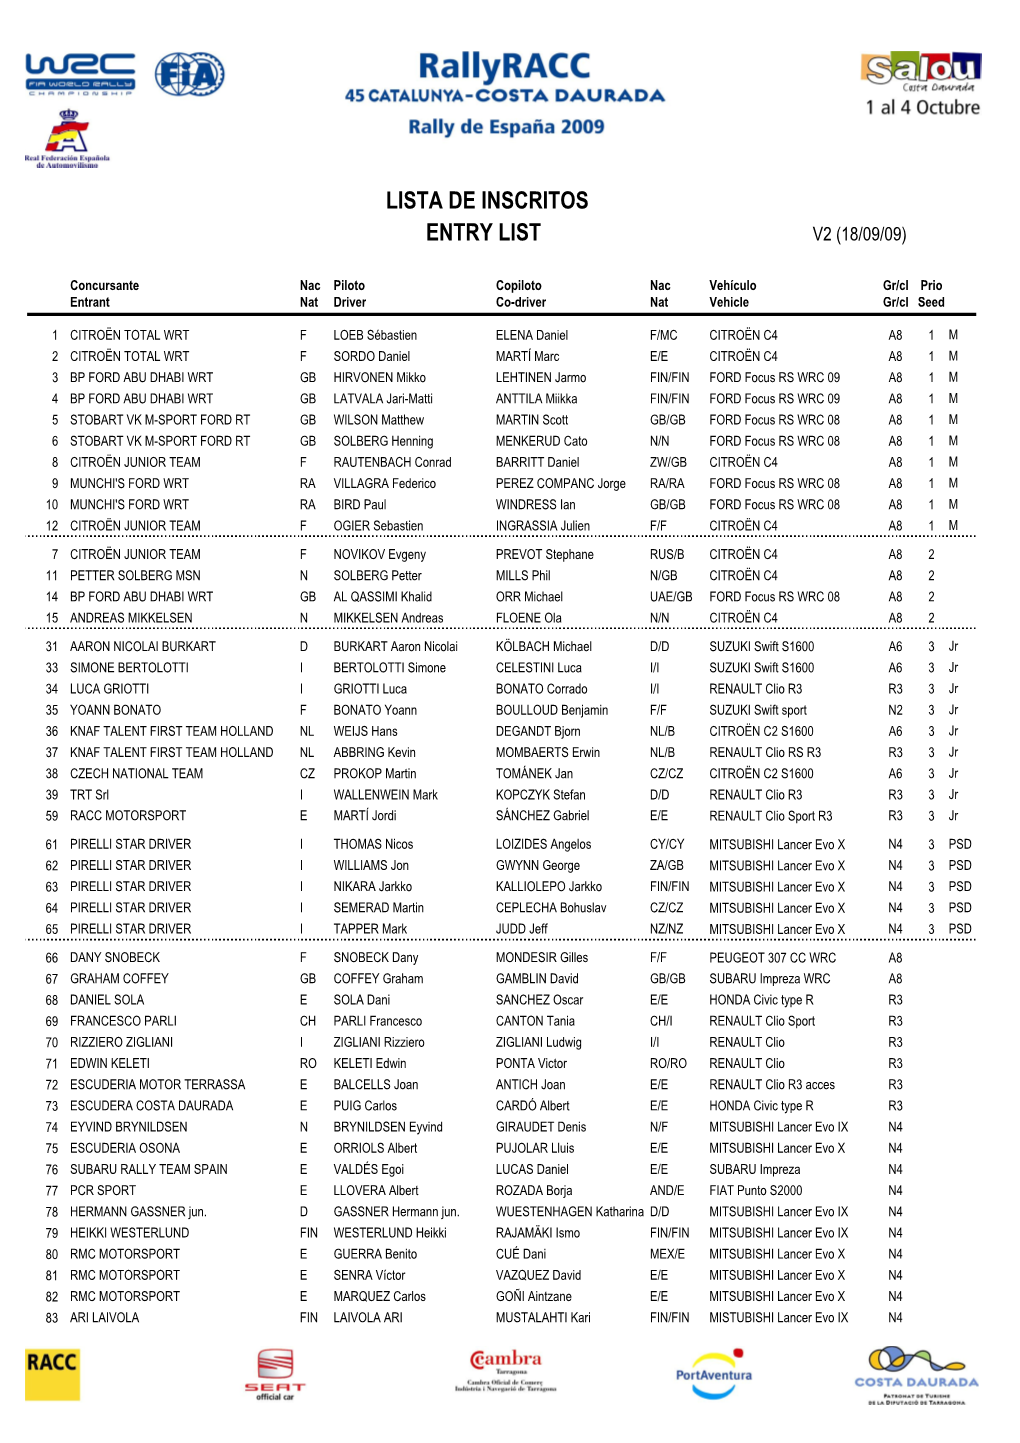 V2 Rallyracc 2009 Entry List Approved by FIA 18